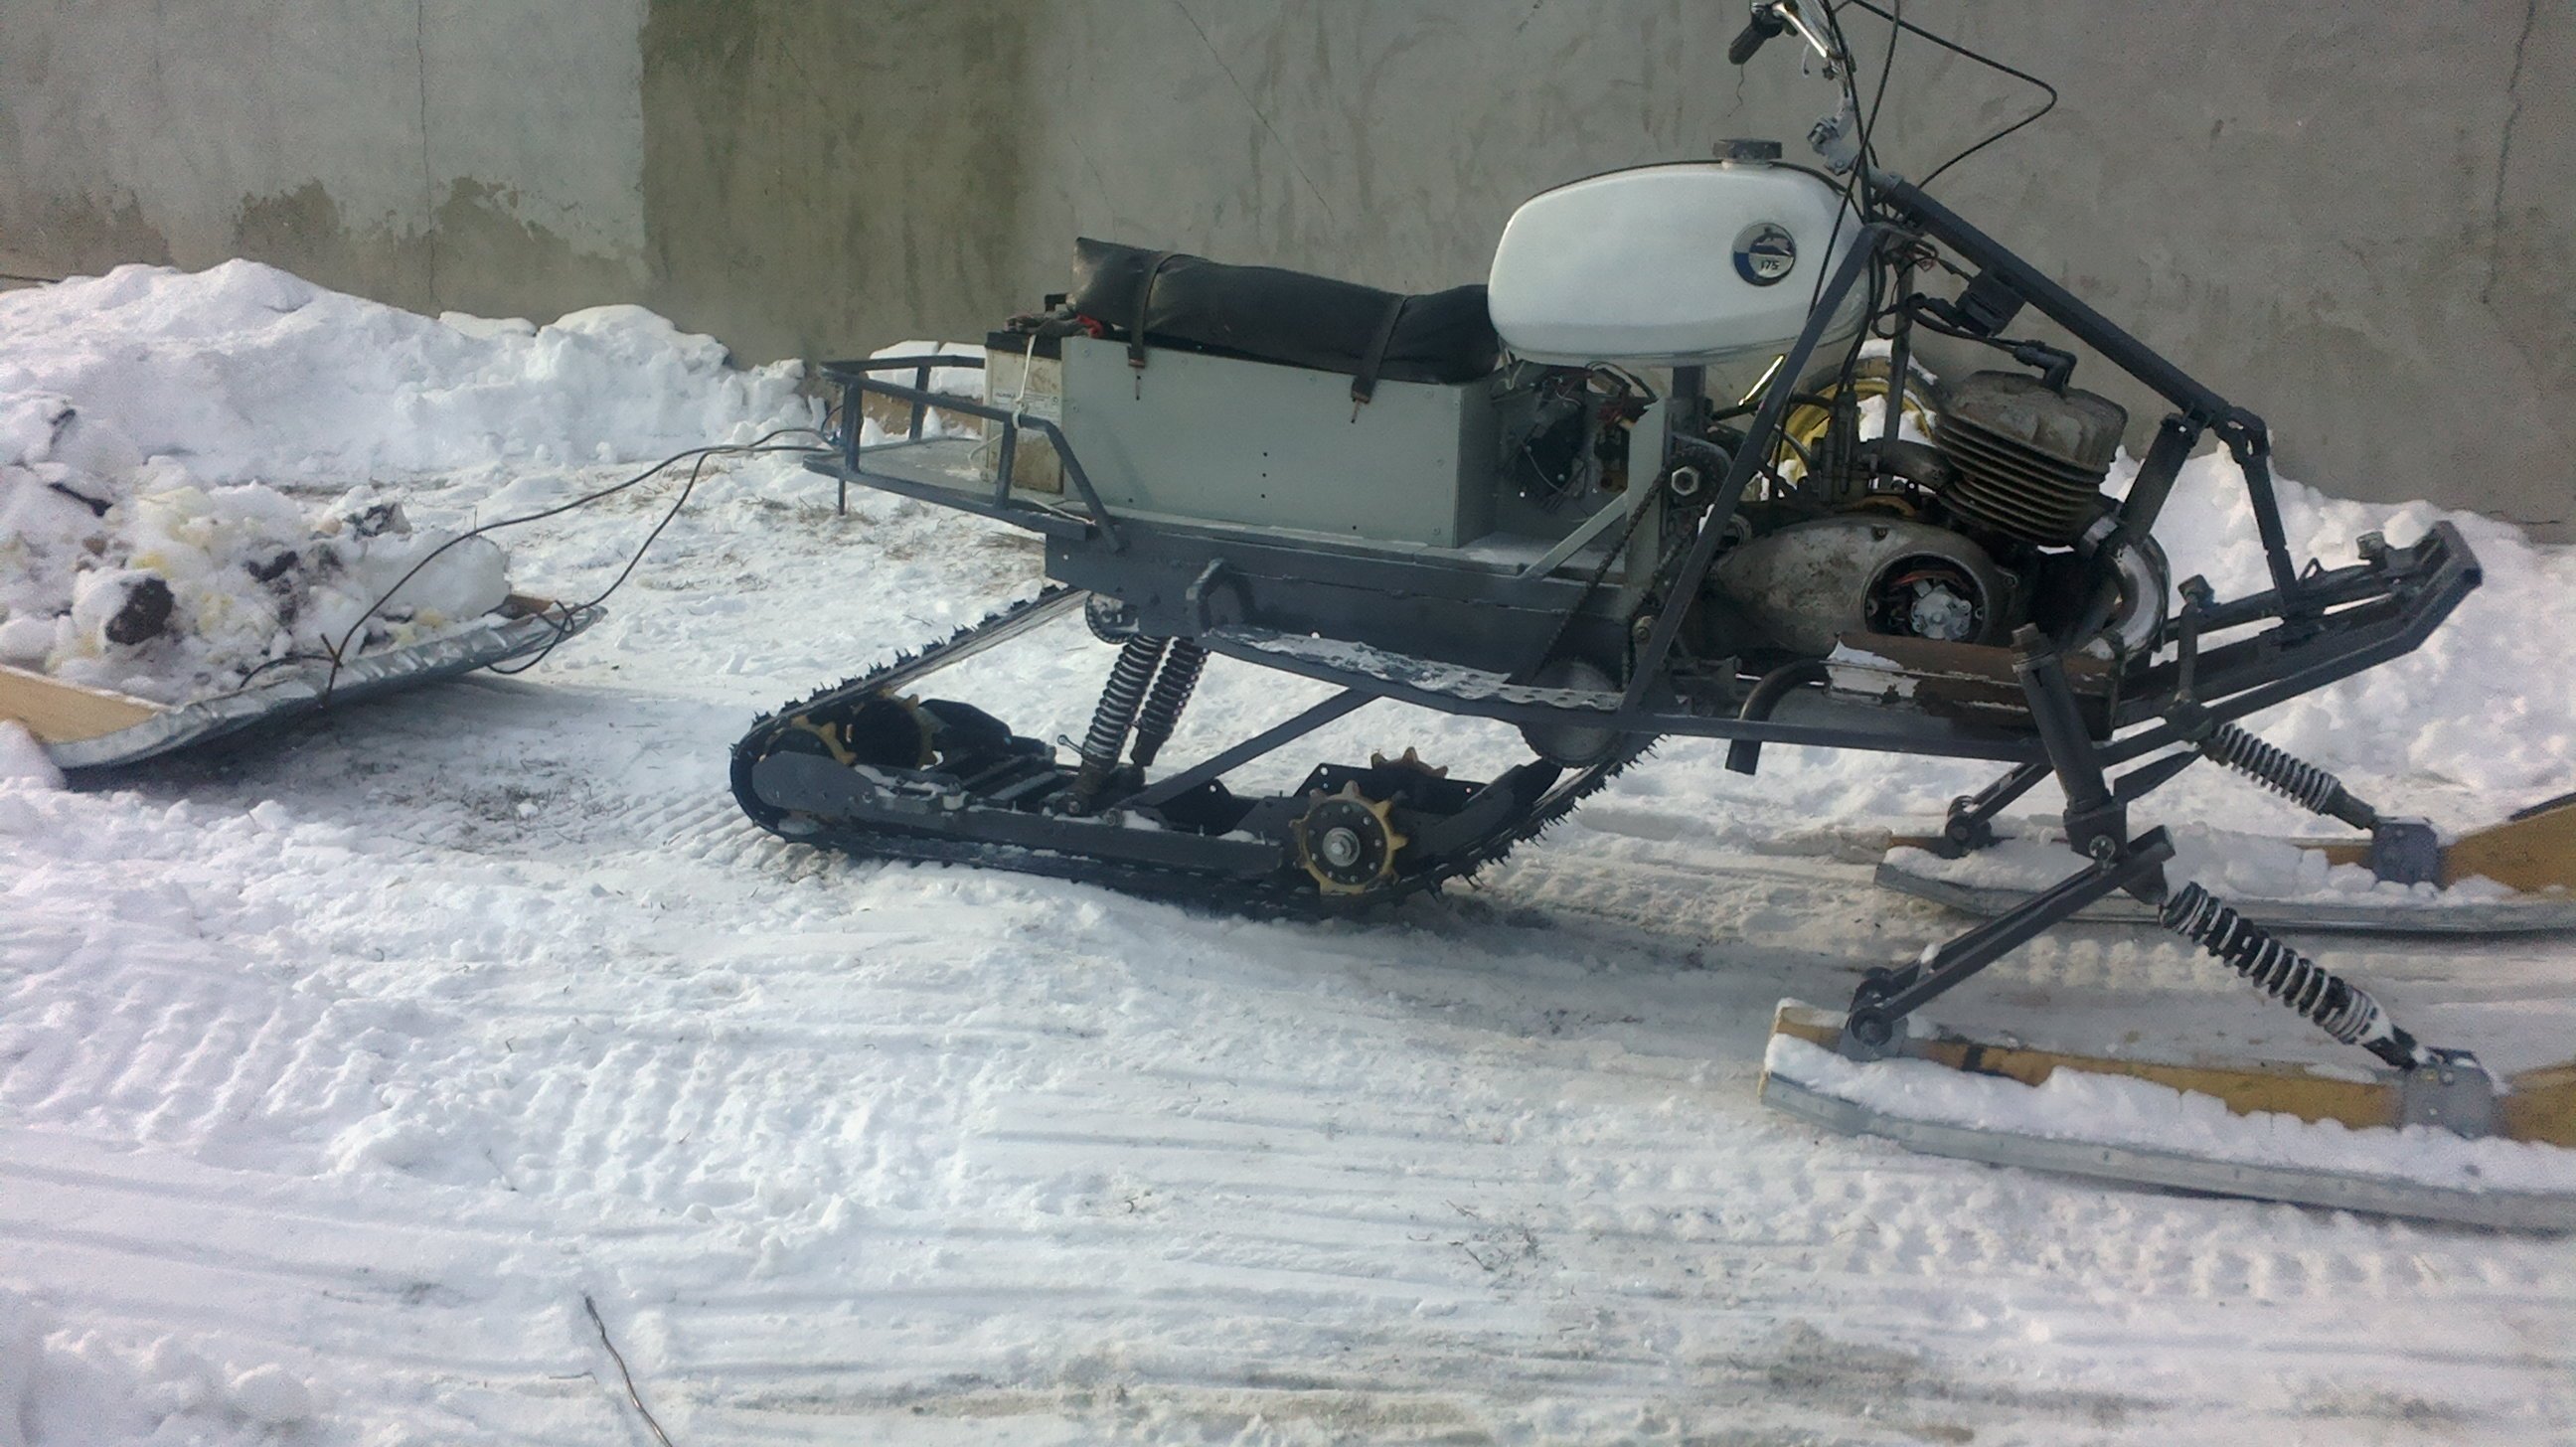 самодельный снегоход / Охотничьи фото: Техника, сооружения и снаряжение / Сибирский охотник